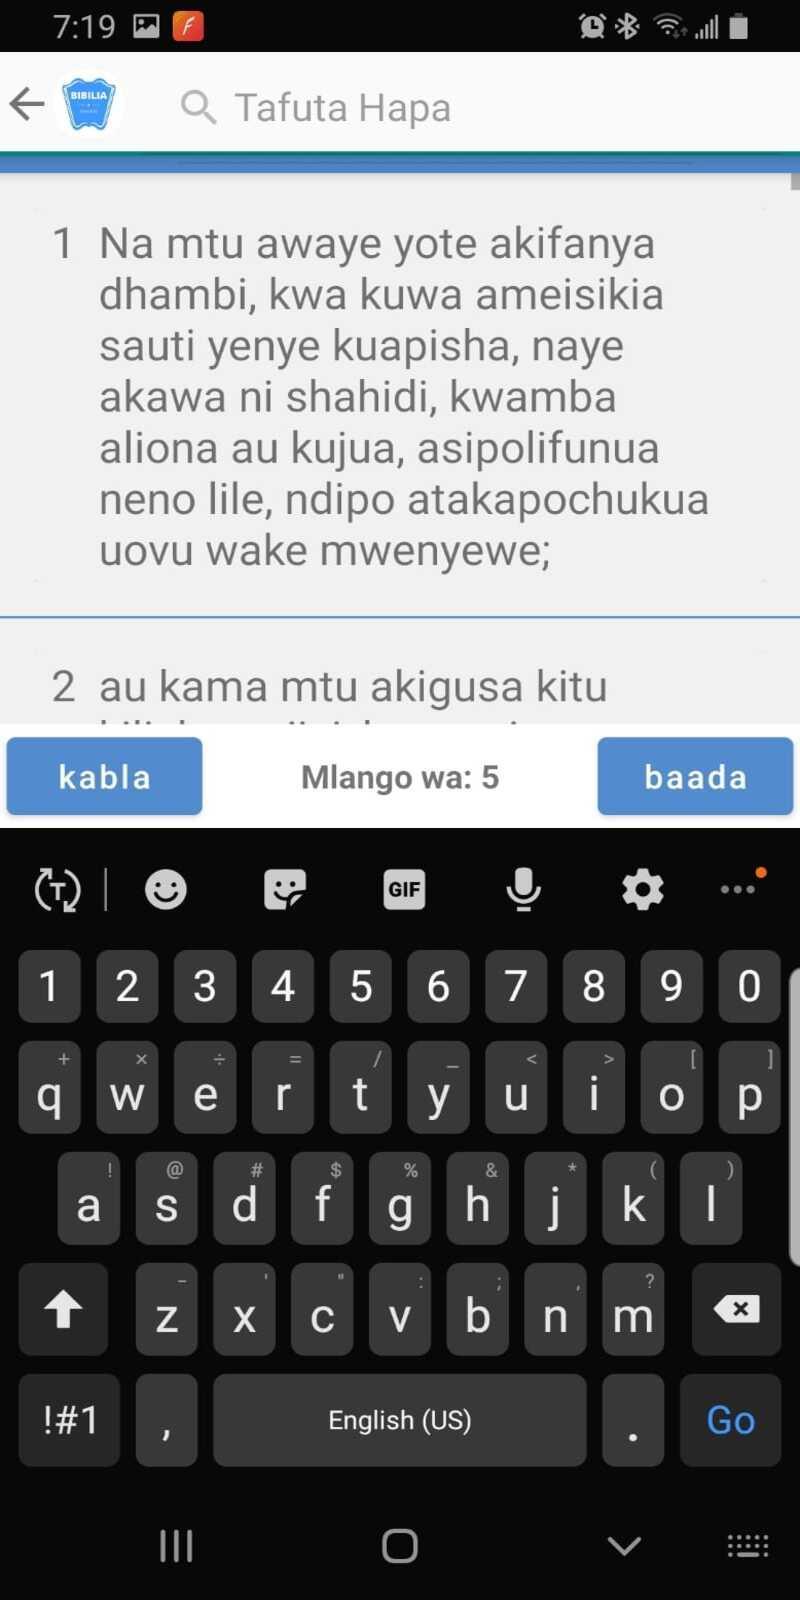 Bibilia Takatifu, Swahili Bible